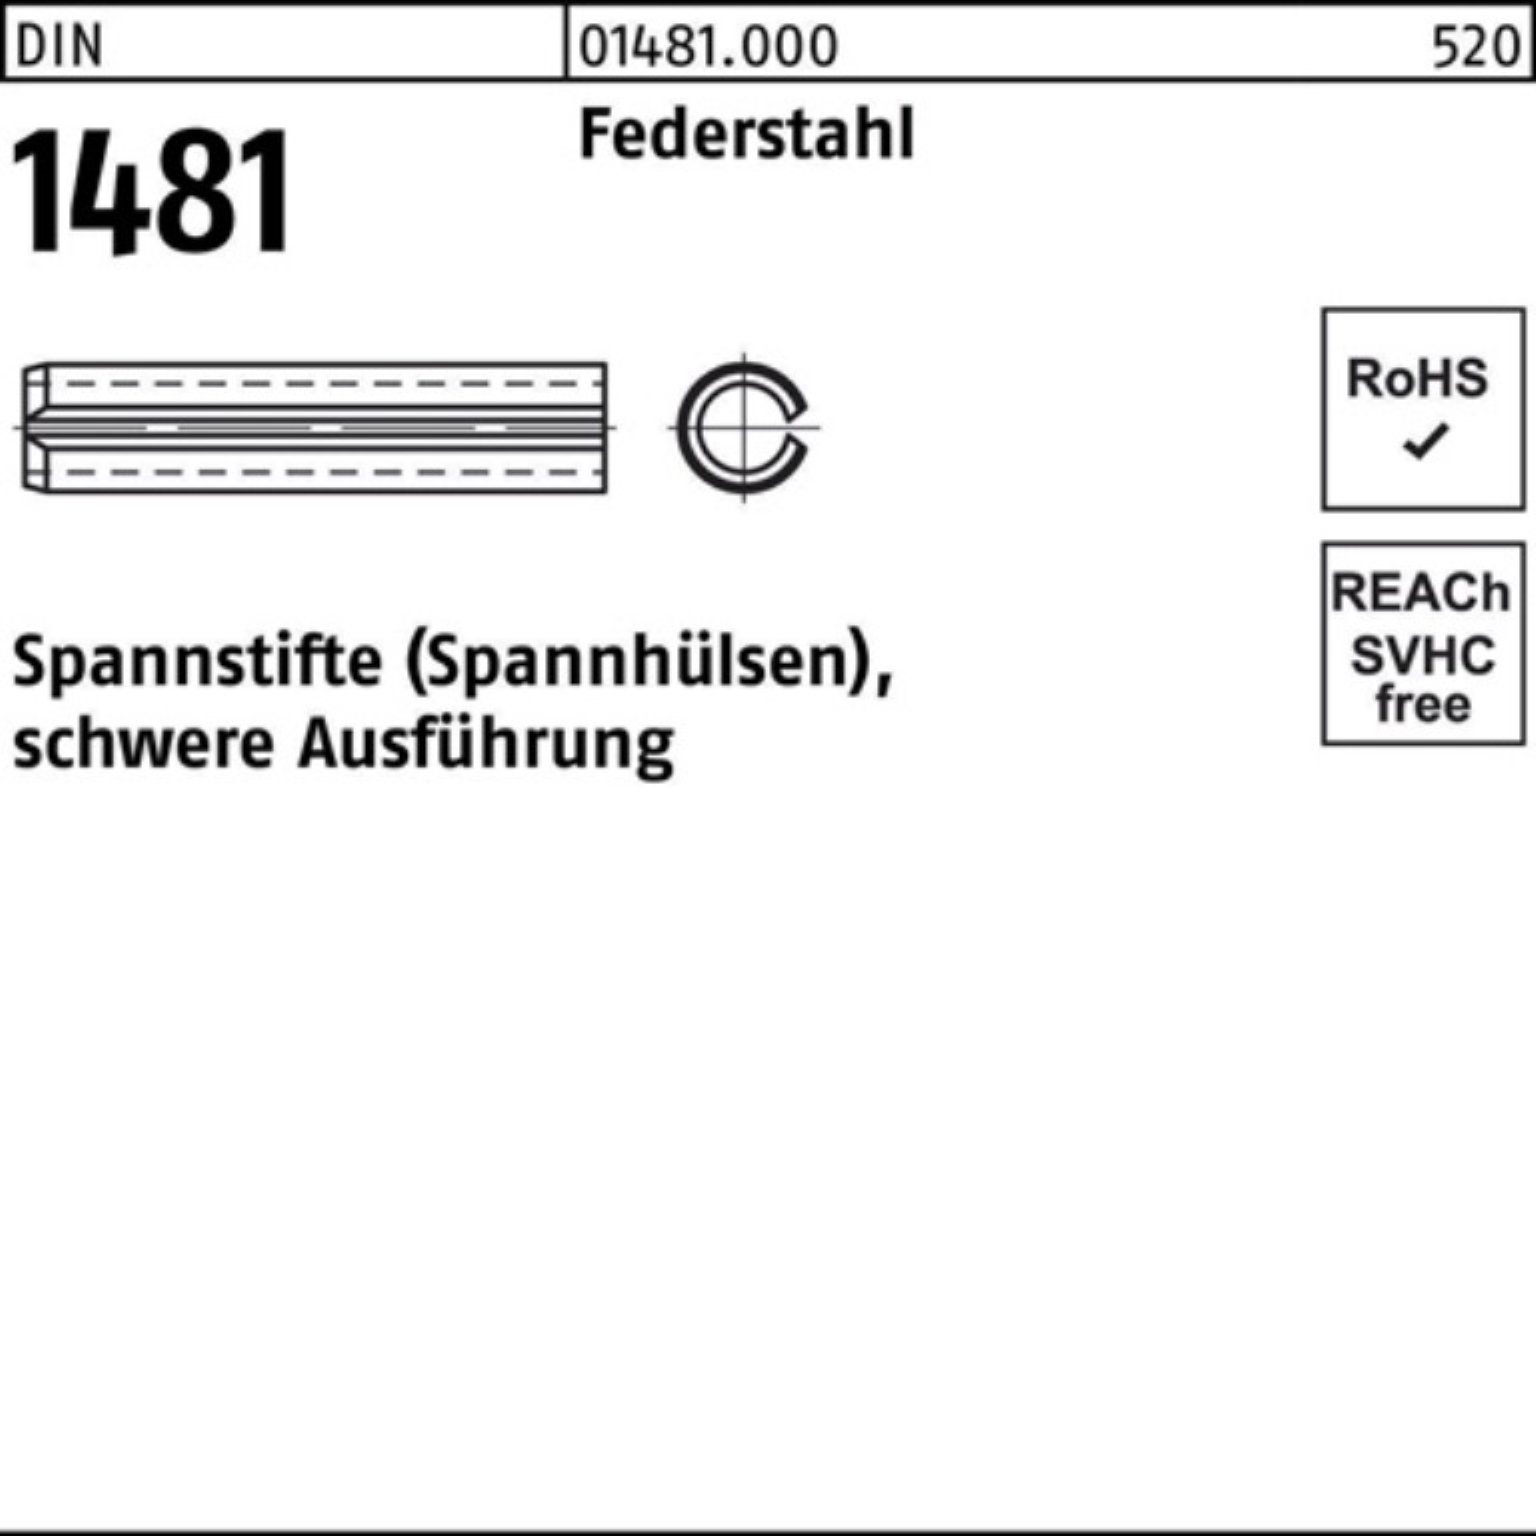 Reyher Spannstift 100er 32 DIN schwere Ausführung 3,5x Spannstift Federstahl 1481 Pack